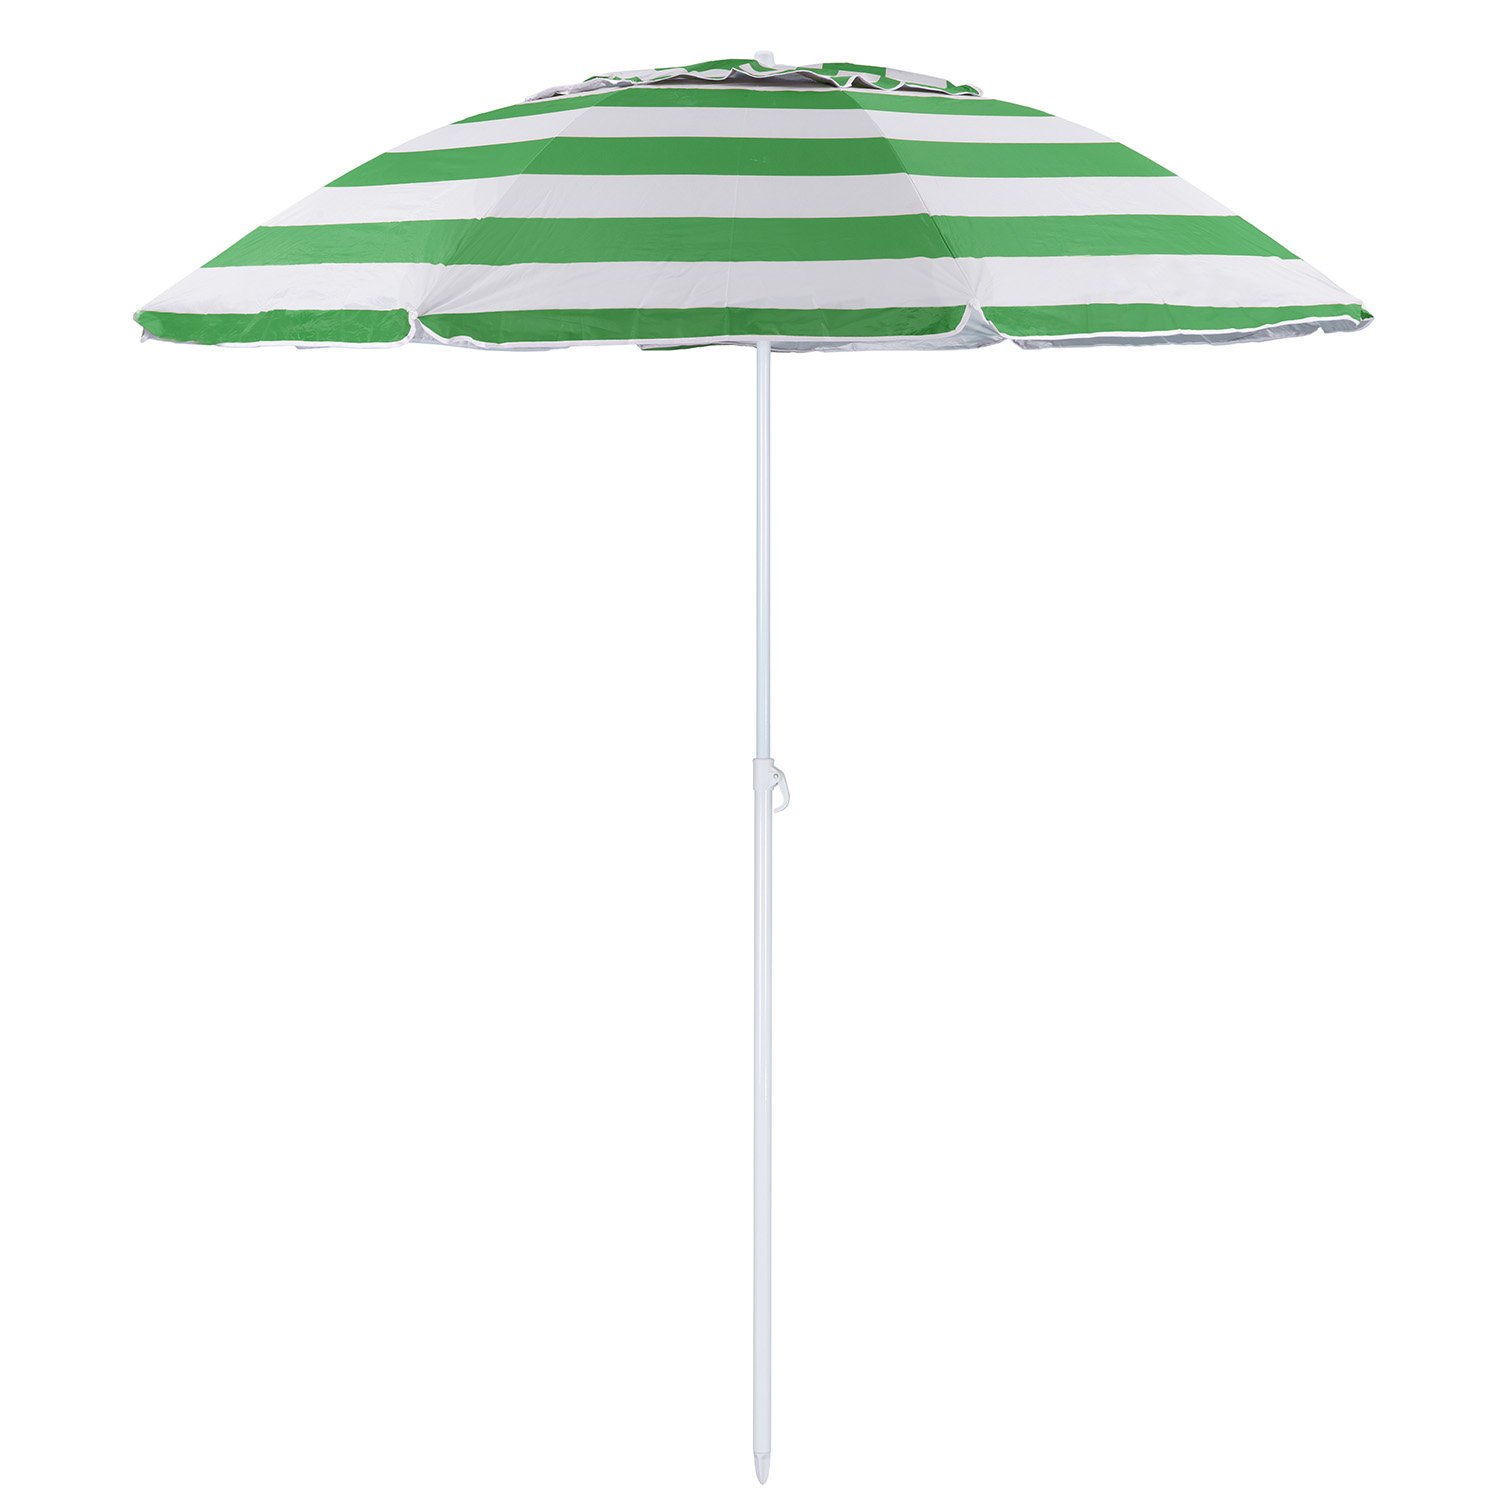 Зонт пляжный BABY STYLE солнцезащитный зонт большой садовый с клапаном 2.2 м зеленый - фото 1